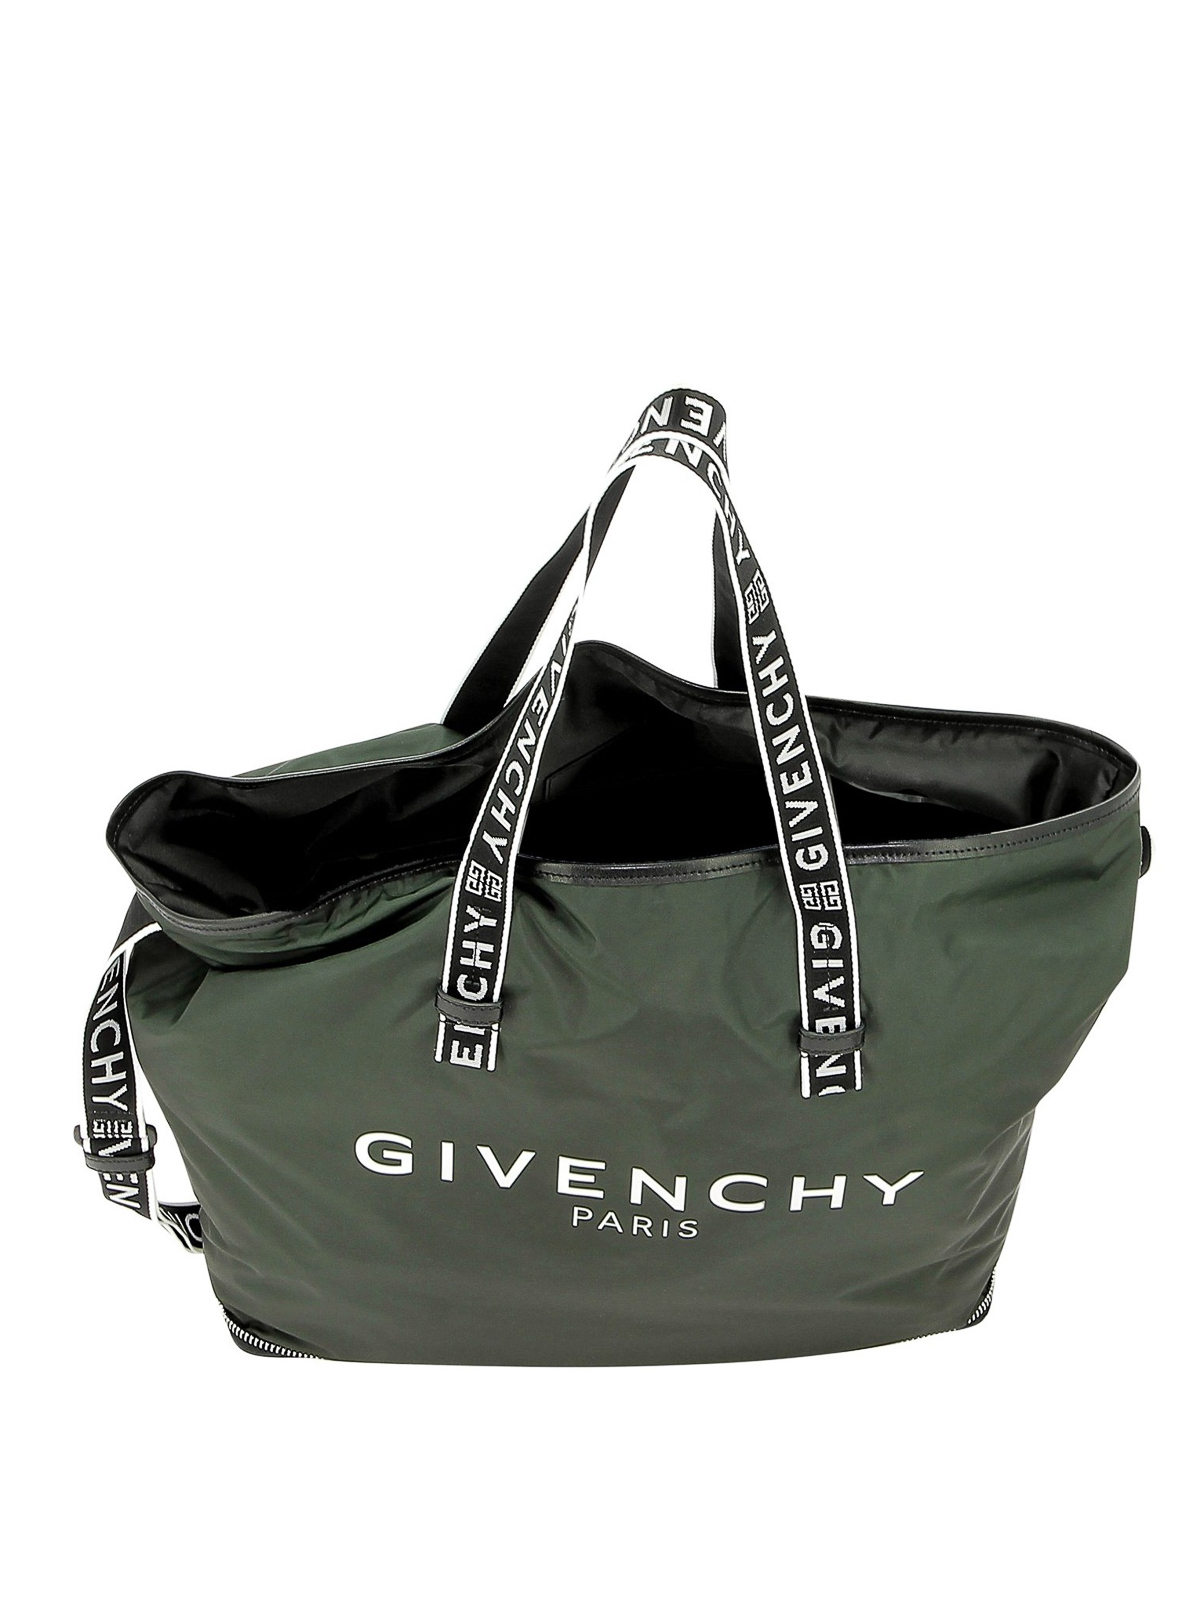 givenchy tote bag